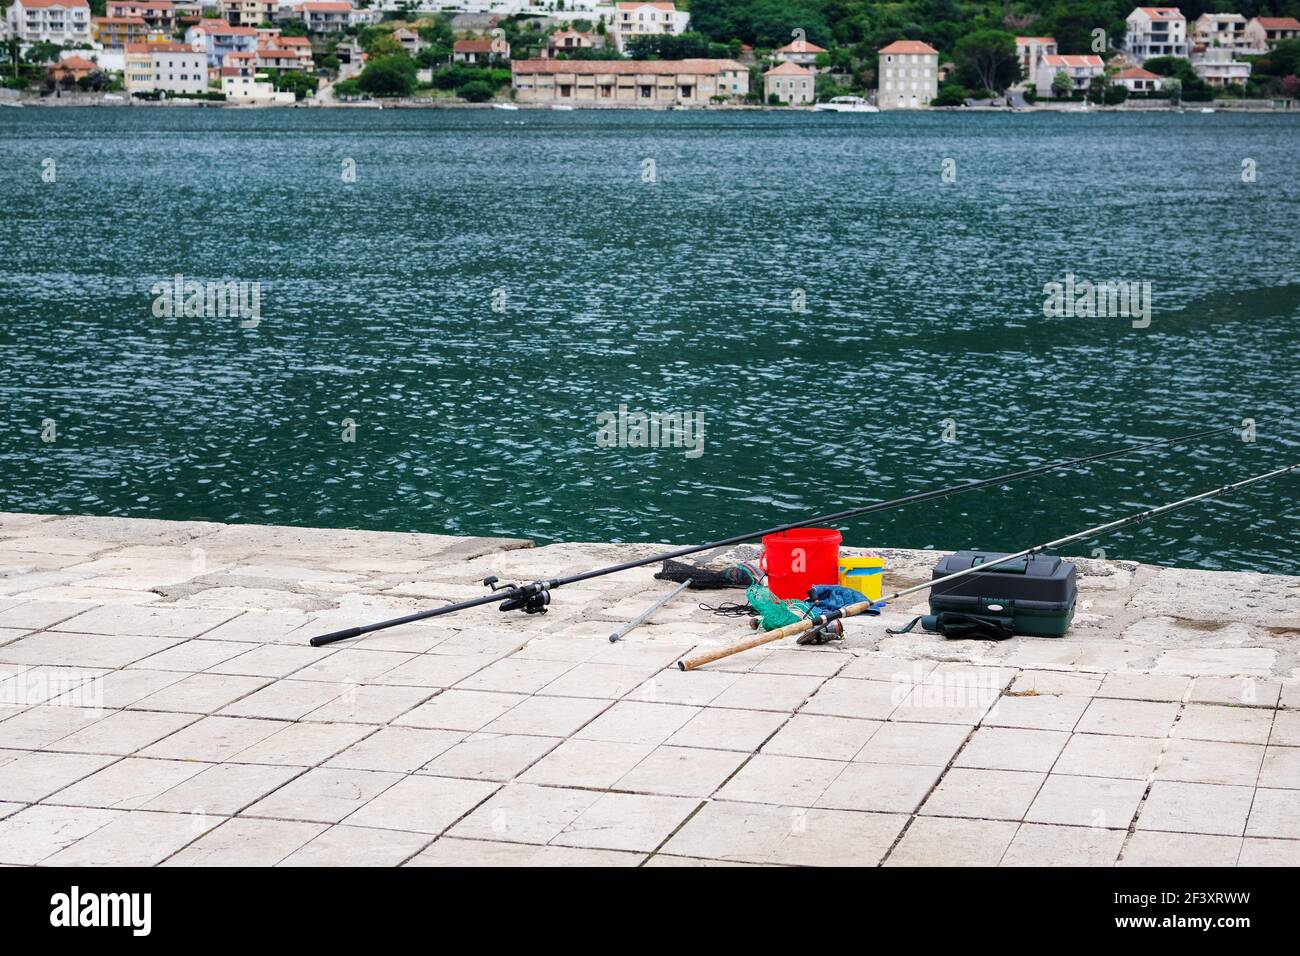 Attrezzatura da pesca sul molo di cemento sul mare. Immagine di due canne da pesca commerciali su acque turchesi. Foto Stock